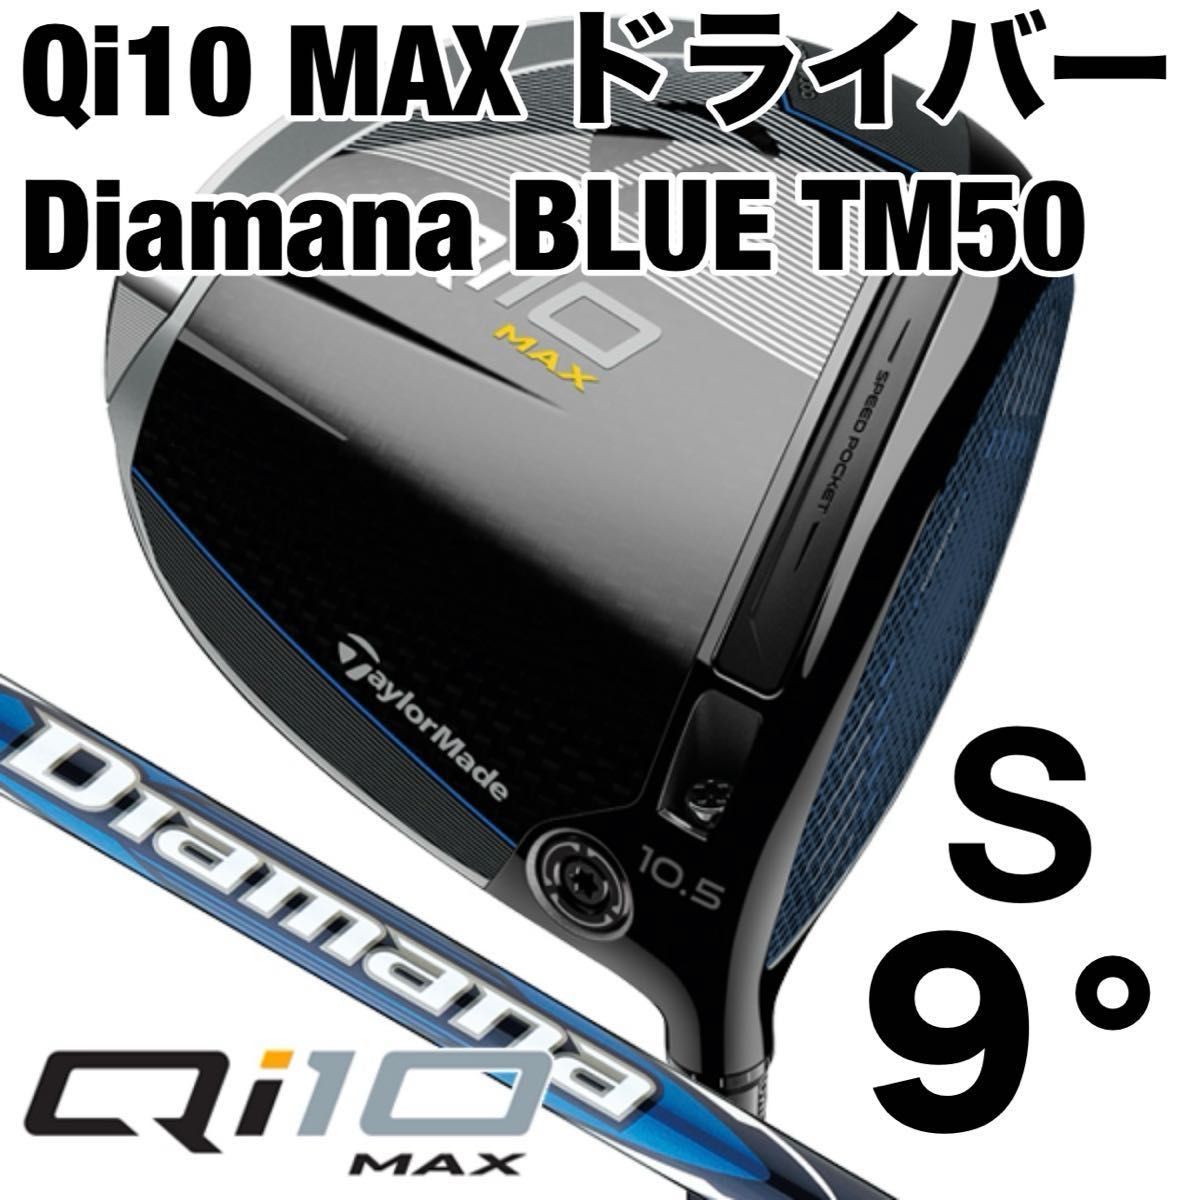 テーラーメイド Qi10 MAX ドライバー キューアイテン マックス Diamana BLUE TM50 S 9° 新品